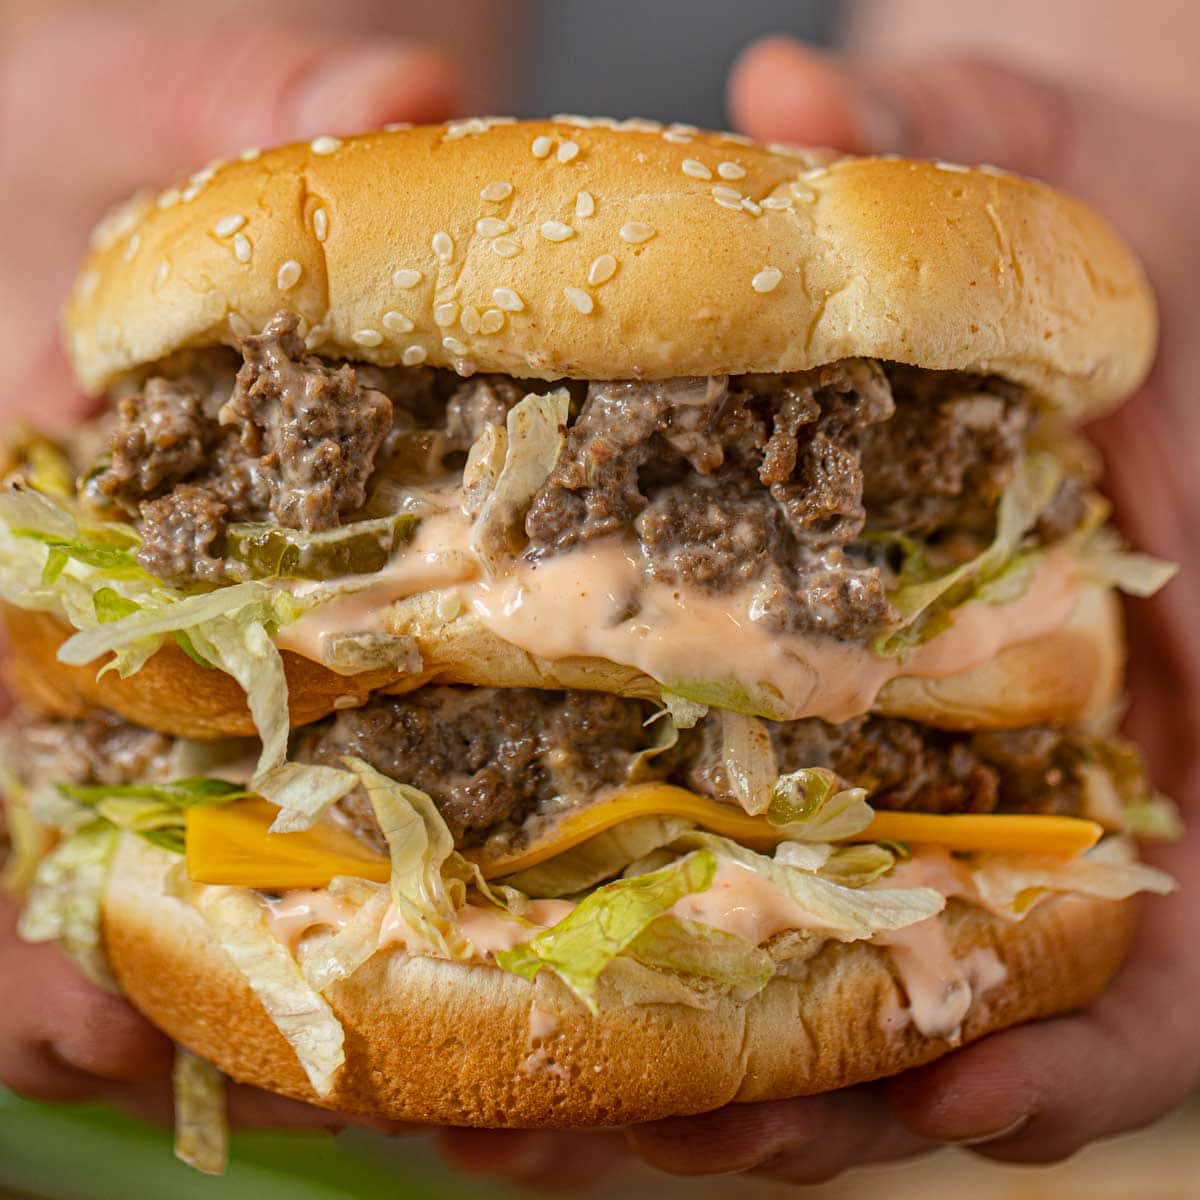 Classic Big Boy Double-Decker Hamburger Copycat Recipe